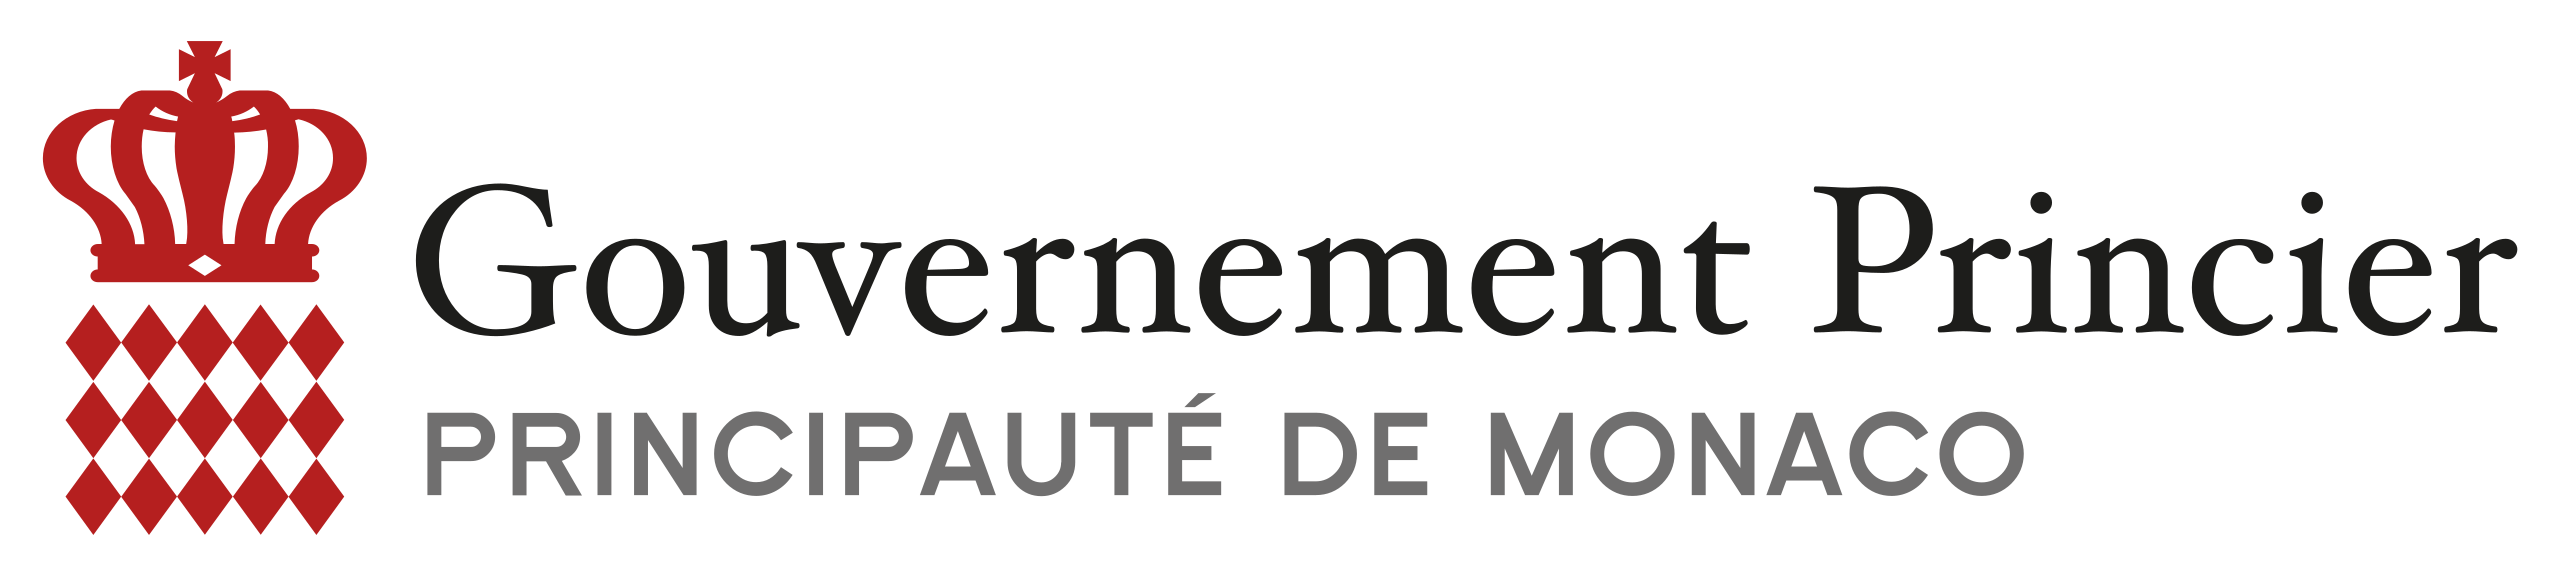 Logo_Gouvernement_Princier_Monaco.svg